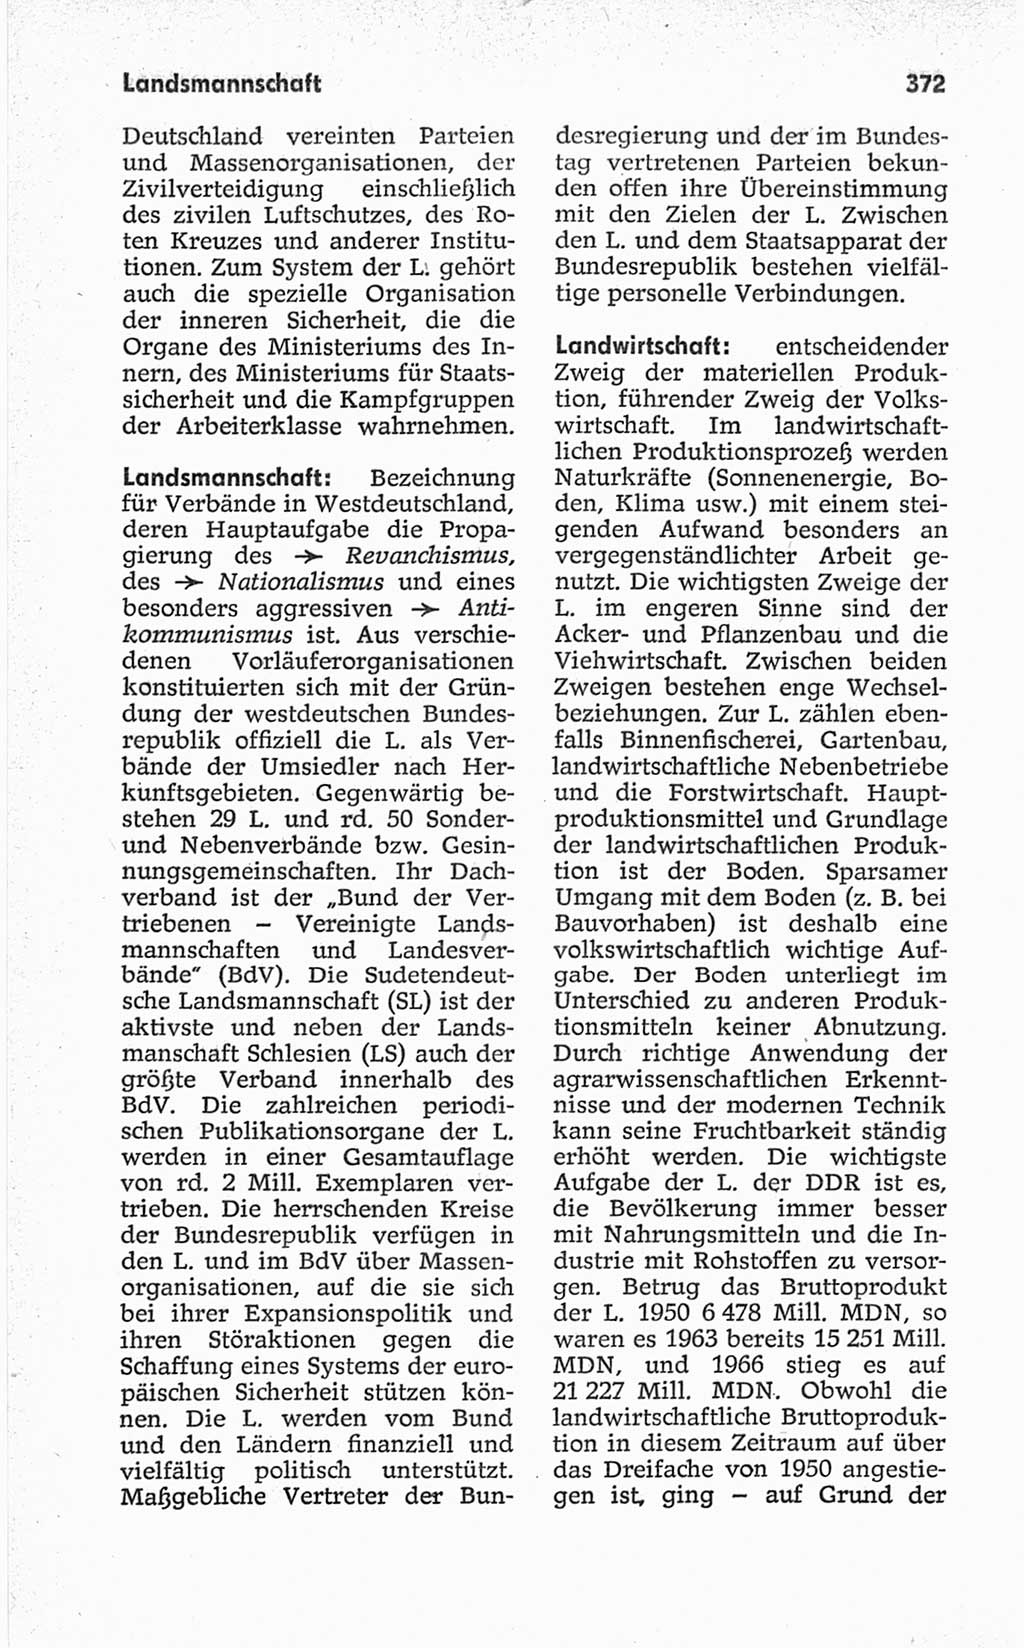 Kleines politisches Wörterbuch [Deutsche Demokratische Republik (DDR)] 1967, Seite 372 (Kl. pol. Wb. DDR 1967, S. 372)